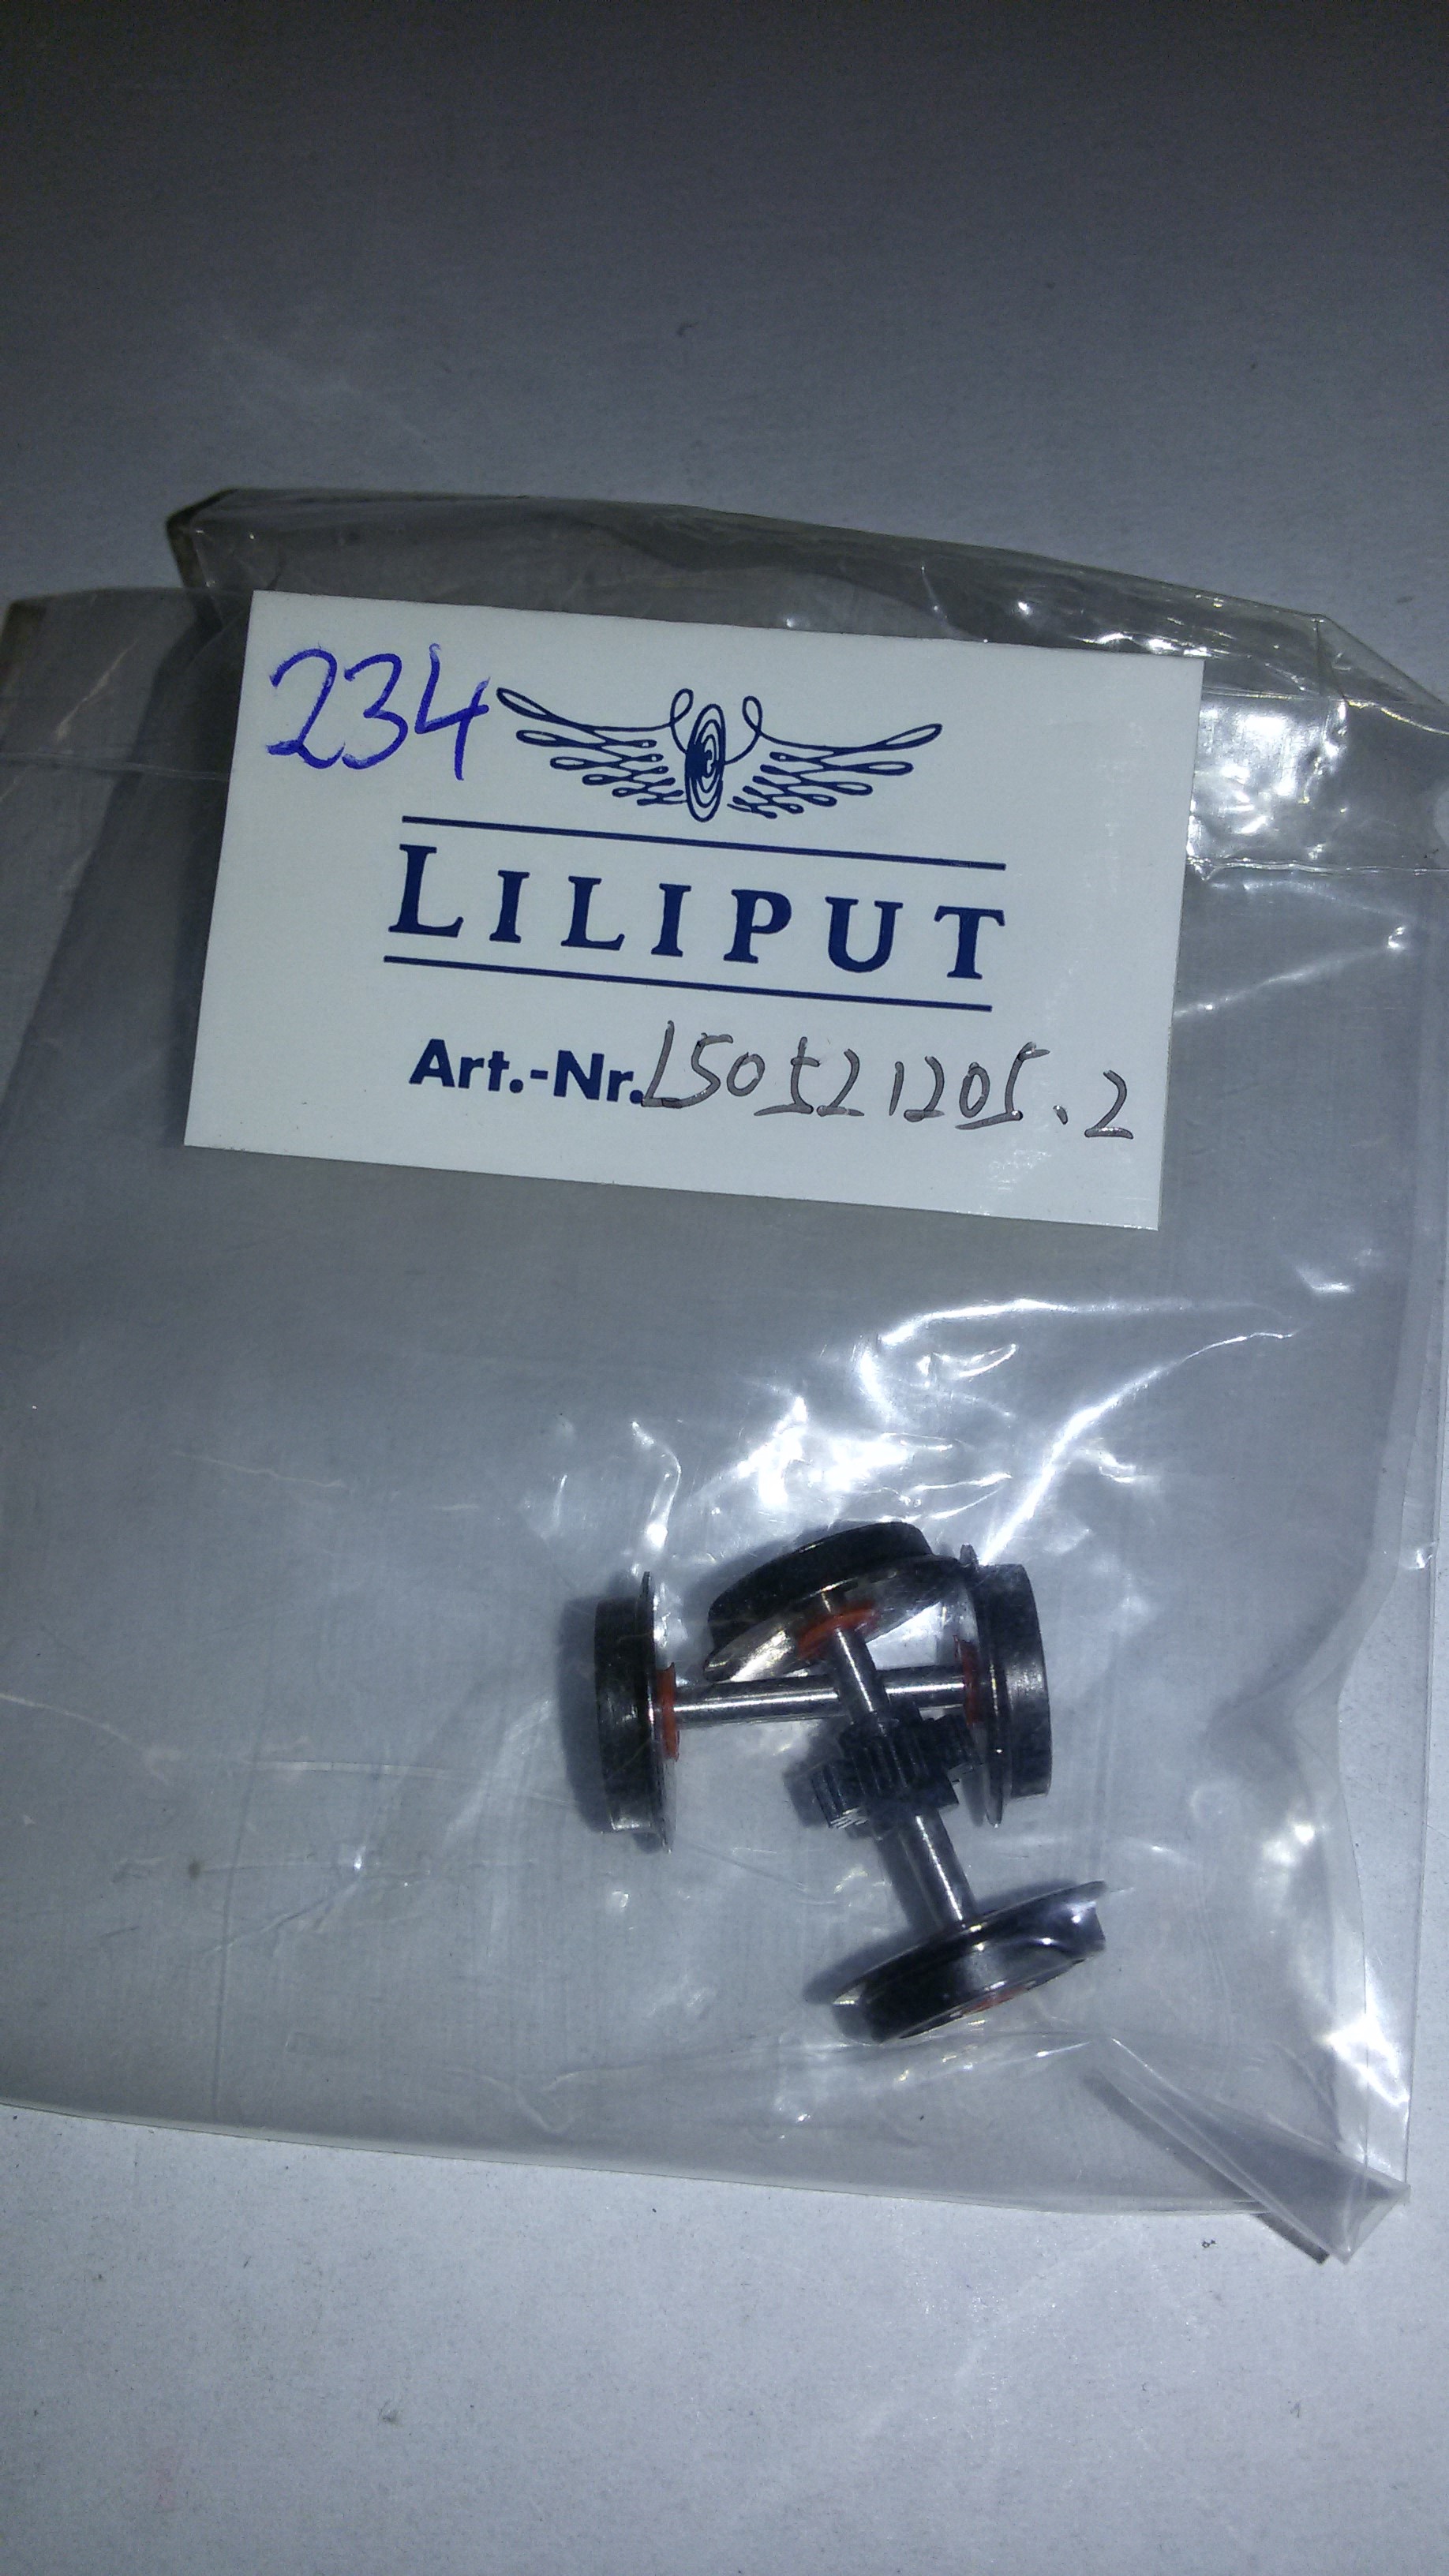 *LO 234* Liliput Ersatzteil L50521205.2 Radsatz